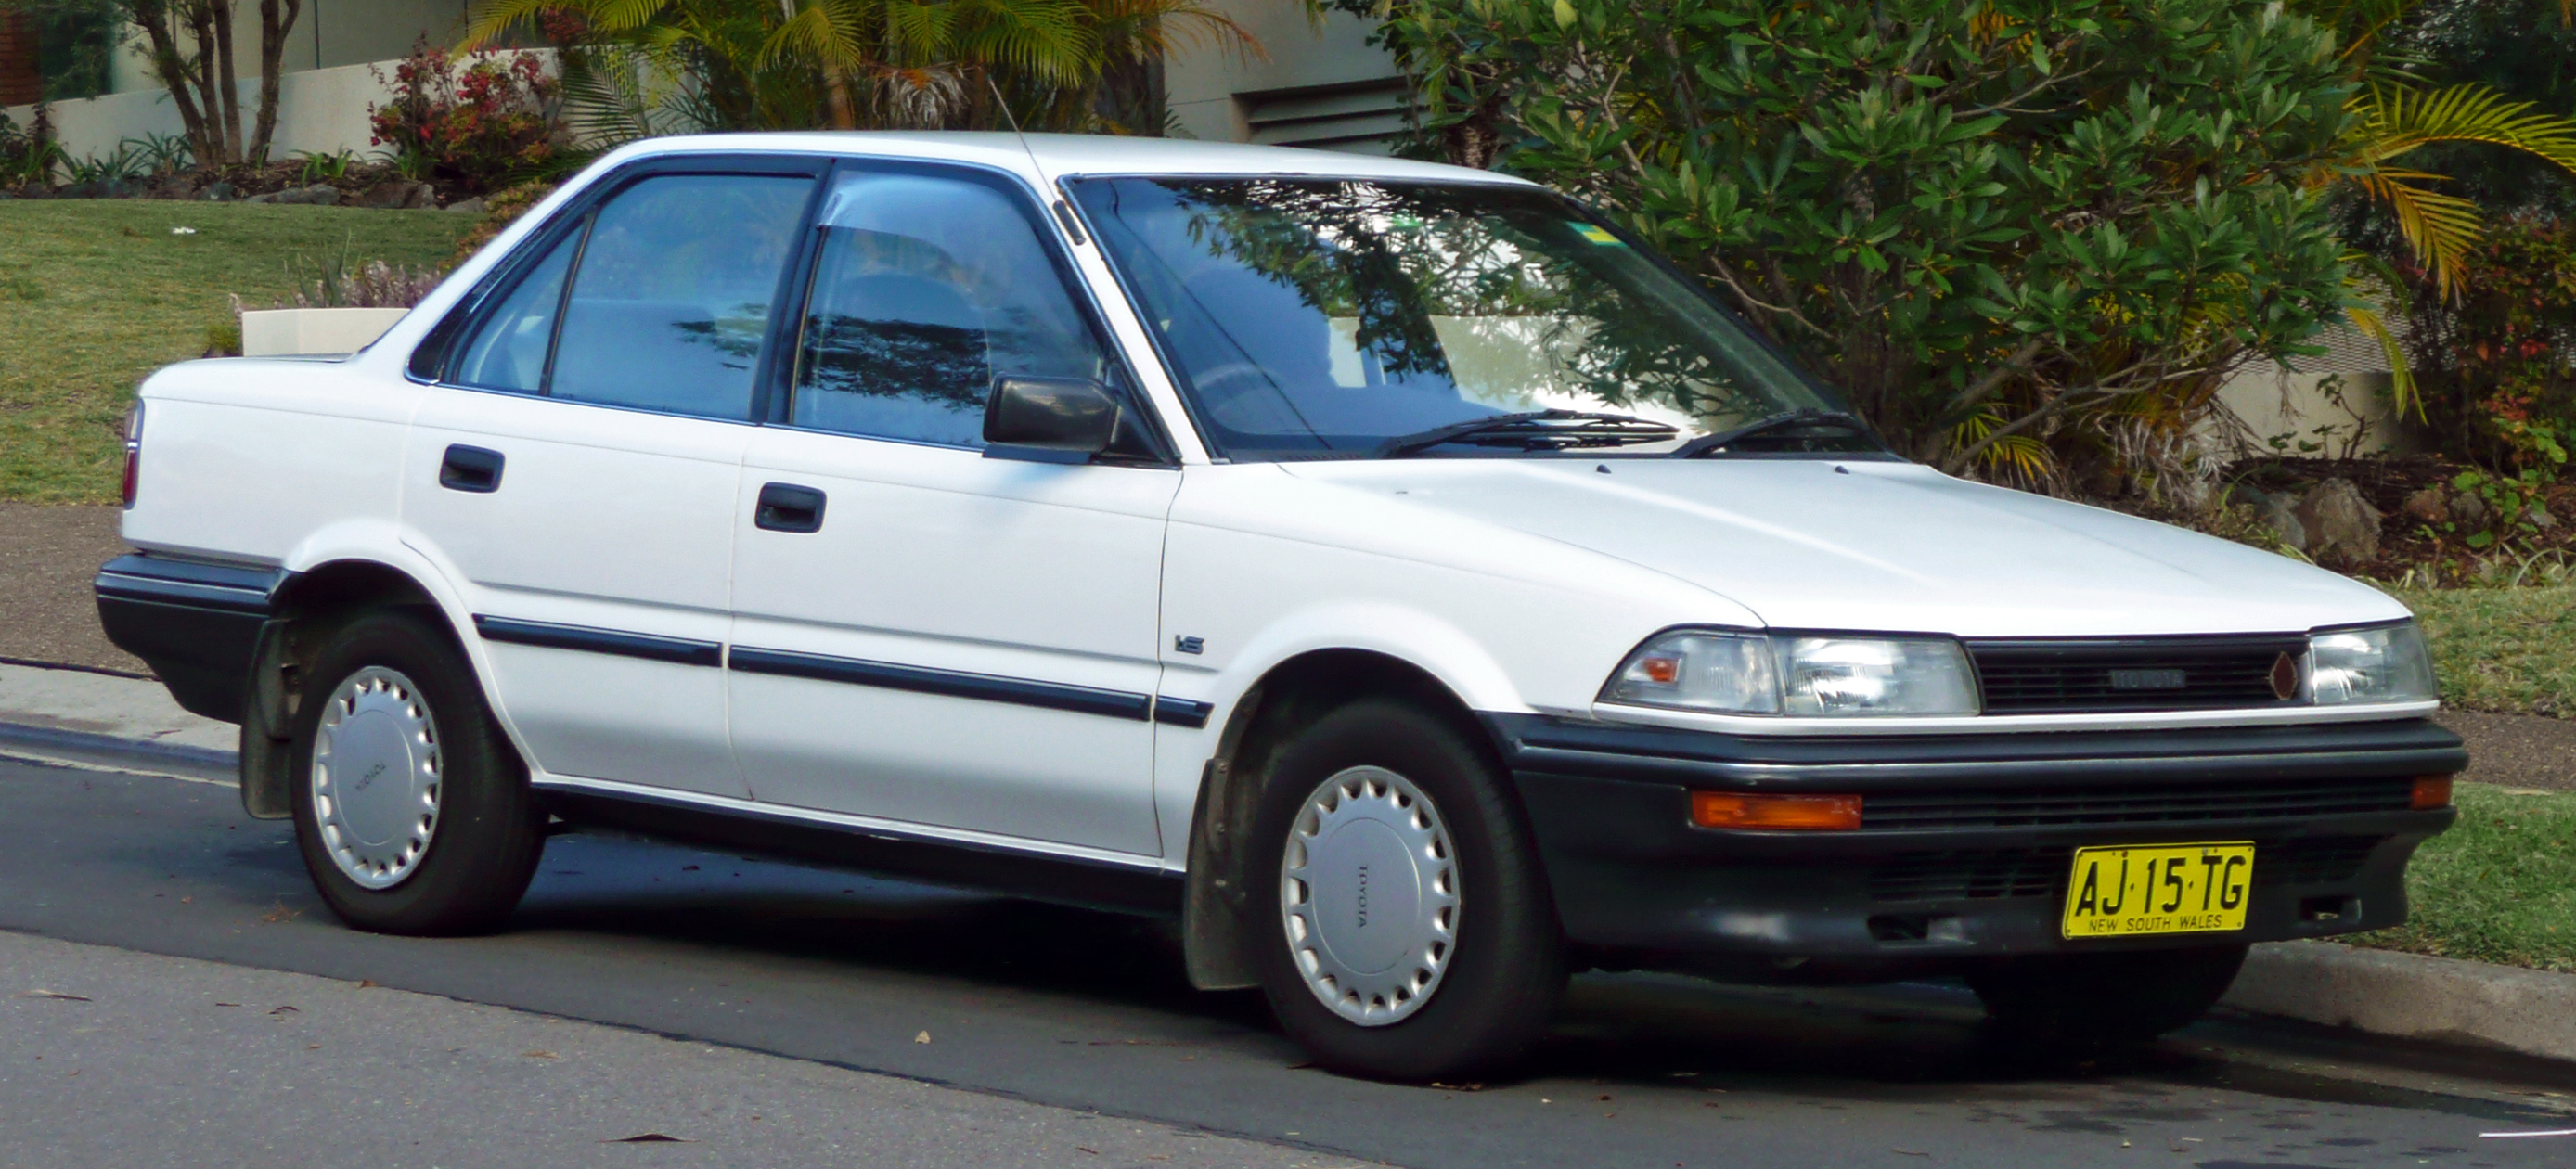 1990 Corolla #2